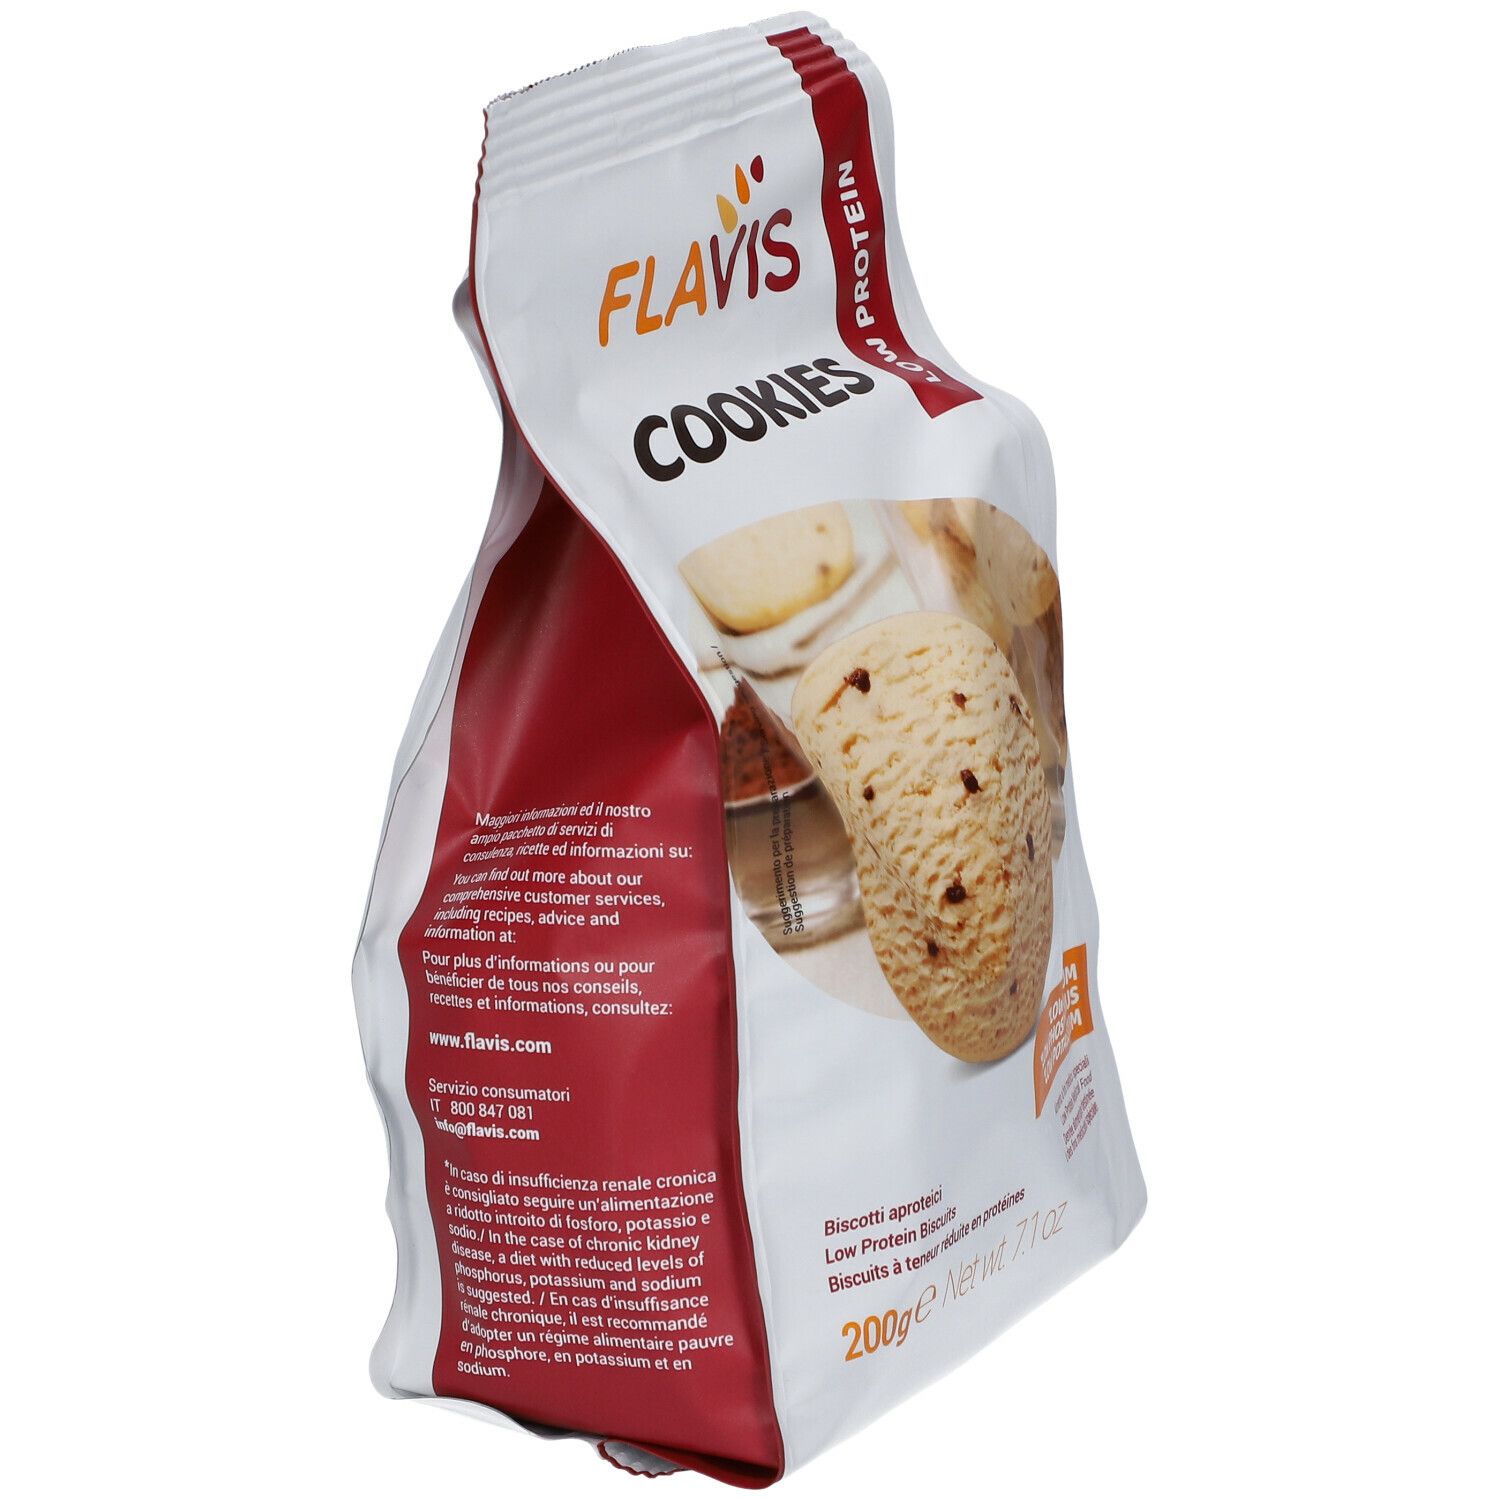 FLAVIS Cookies